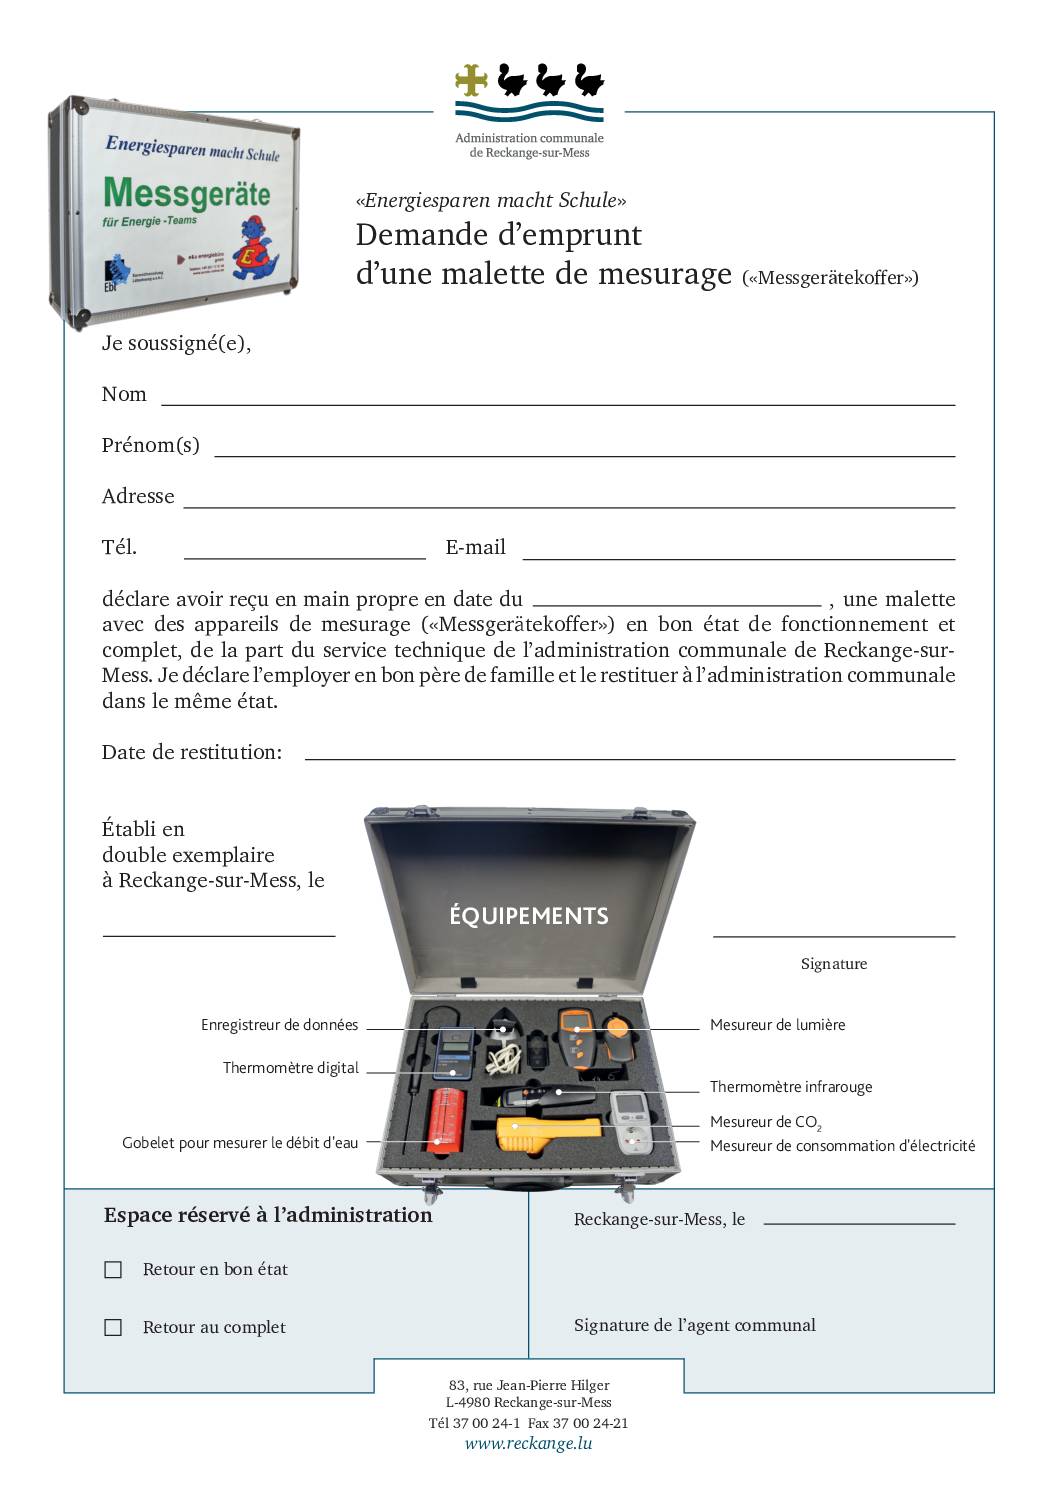 Formulaire - Demande d'emprunt de malette de mesurage (Messgerätekoffer)